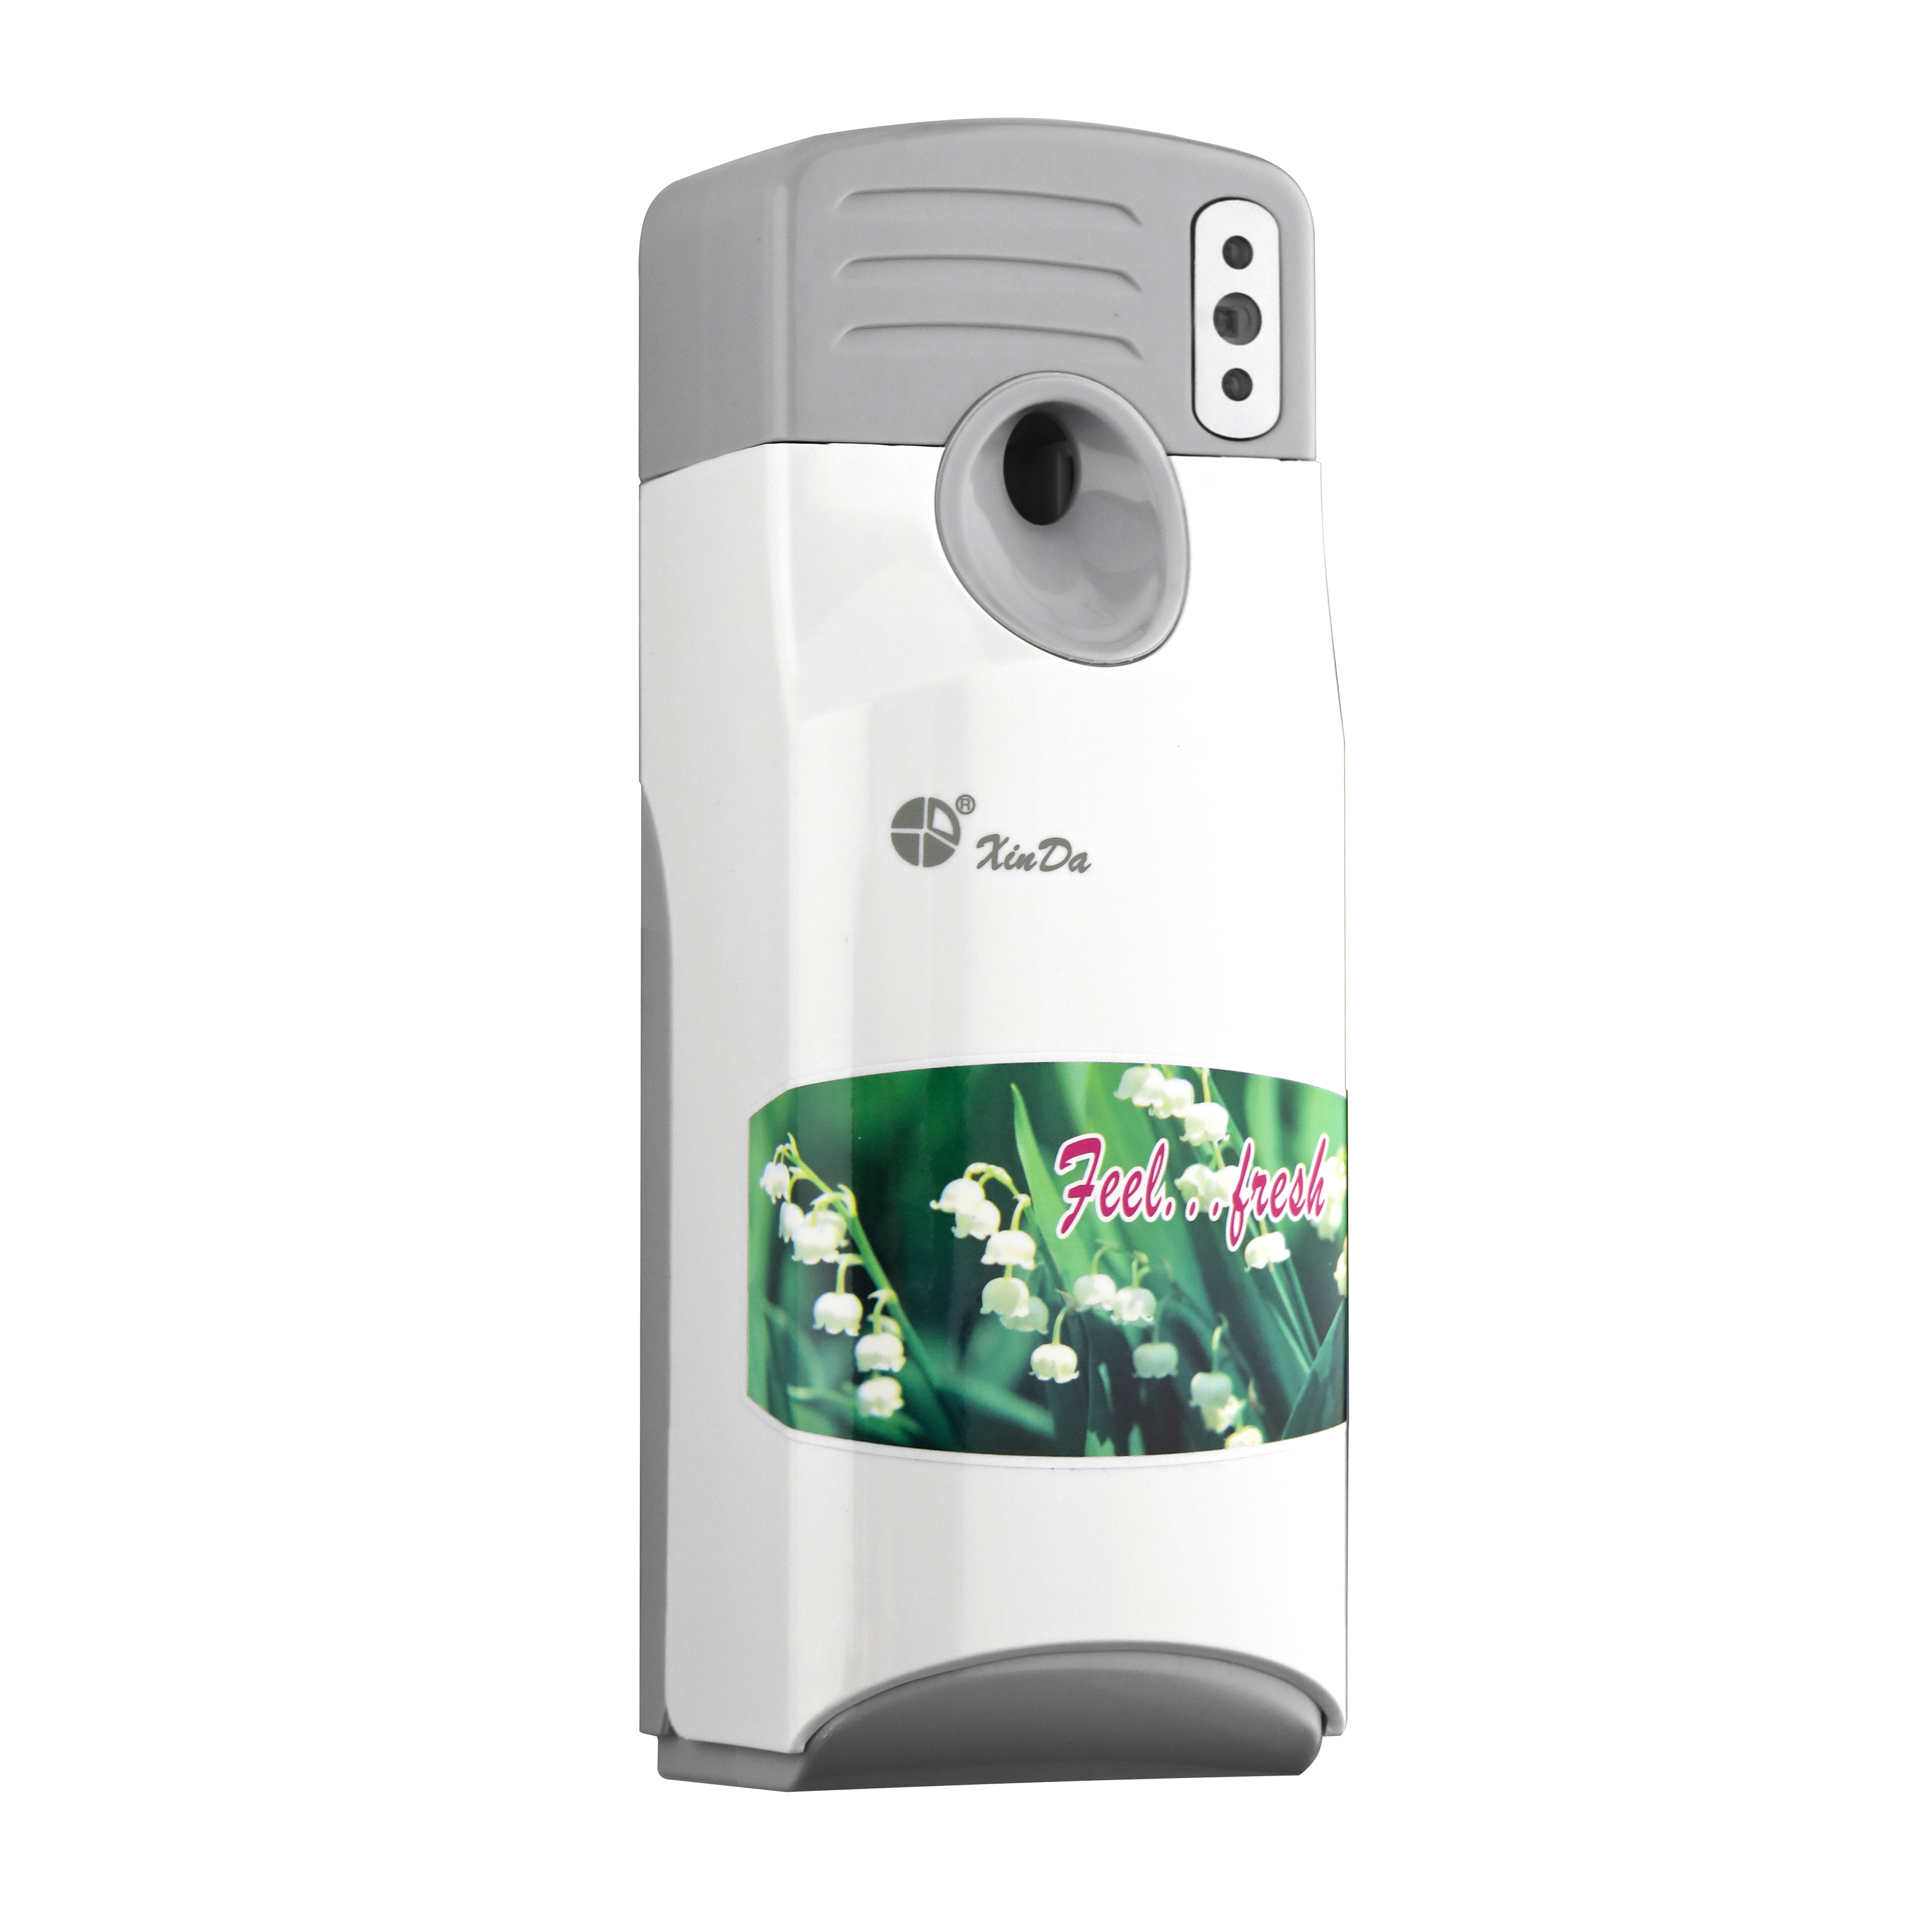 Der XinDa PXQ288 Toilettenbewegungssensor LCD batteriebetriebener automatischer Lufterfrischer an der Wand montierter Parfüm-Aerosolspender